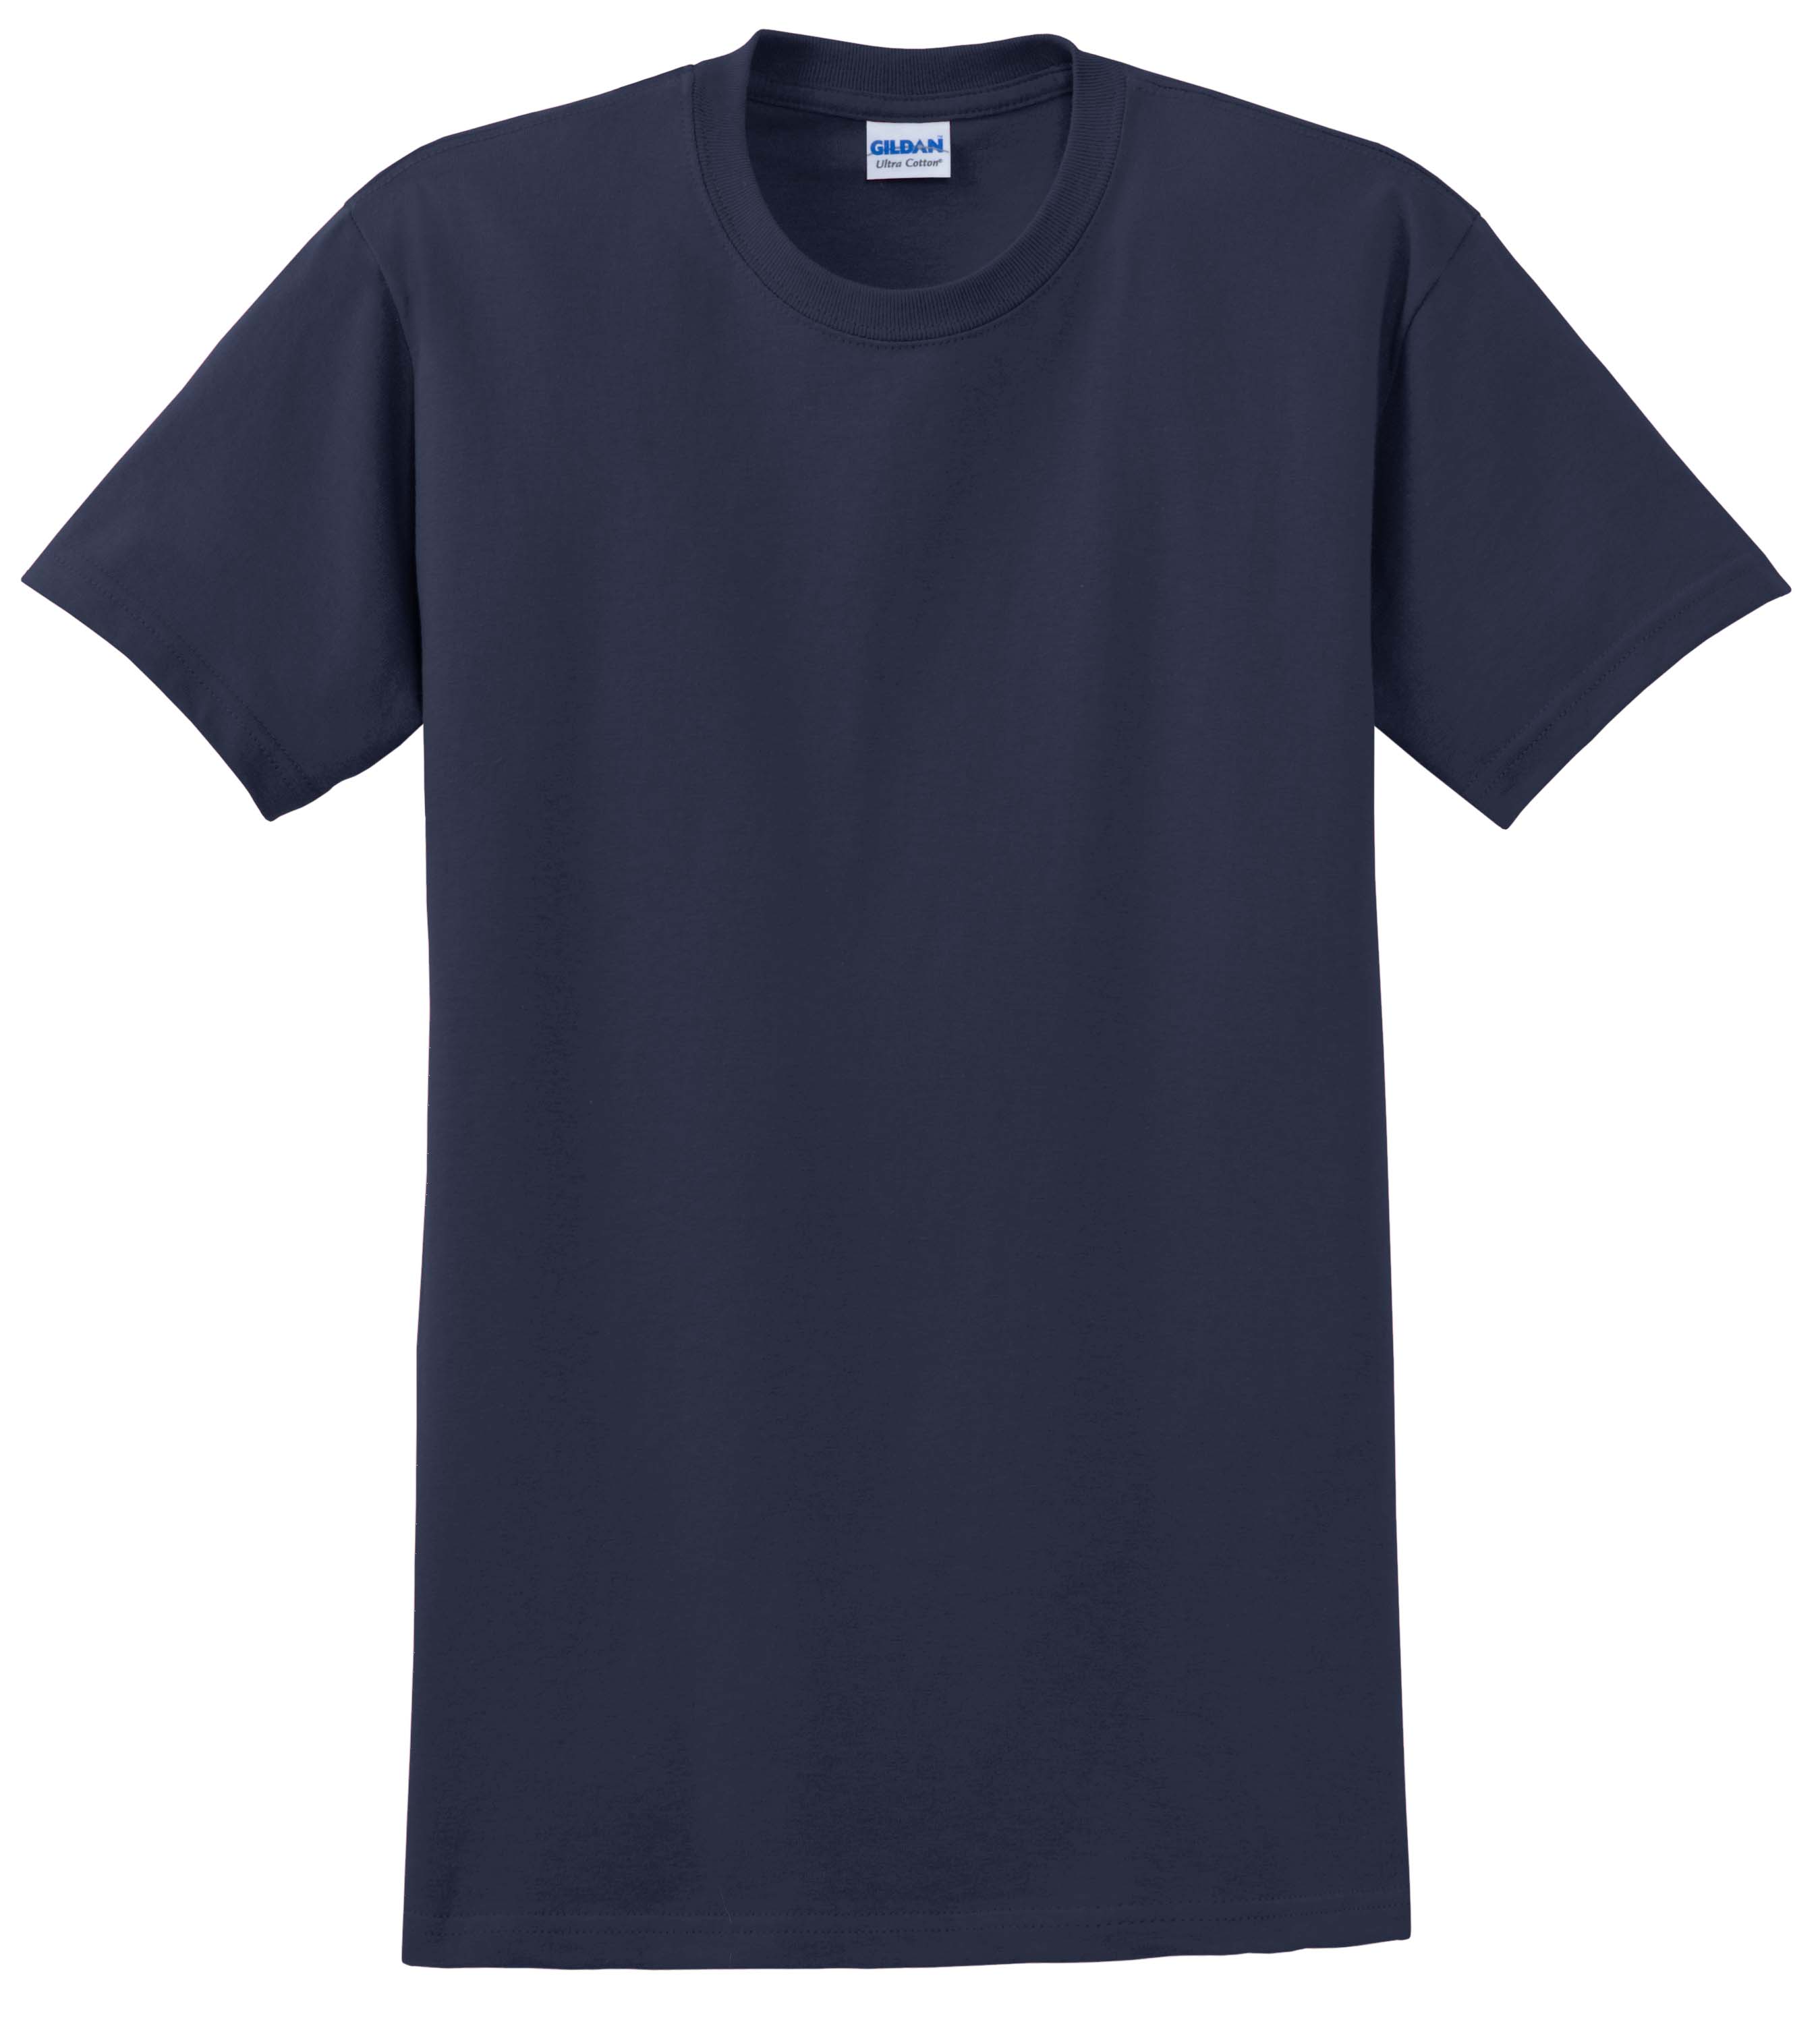 Y12000-YOUTH Gildan 100% cotton Short Sleeve tee shirt